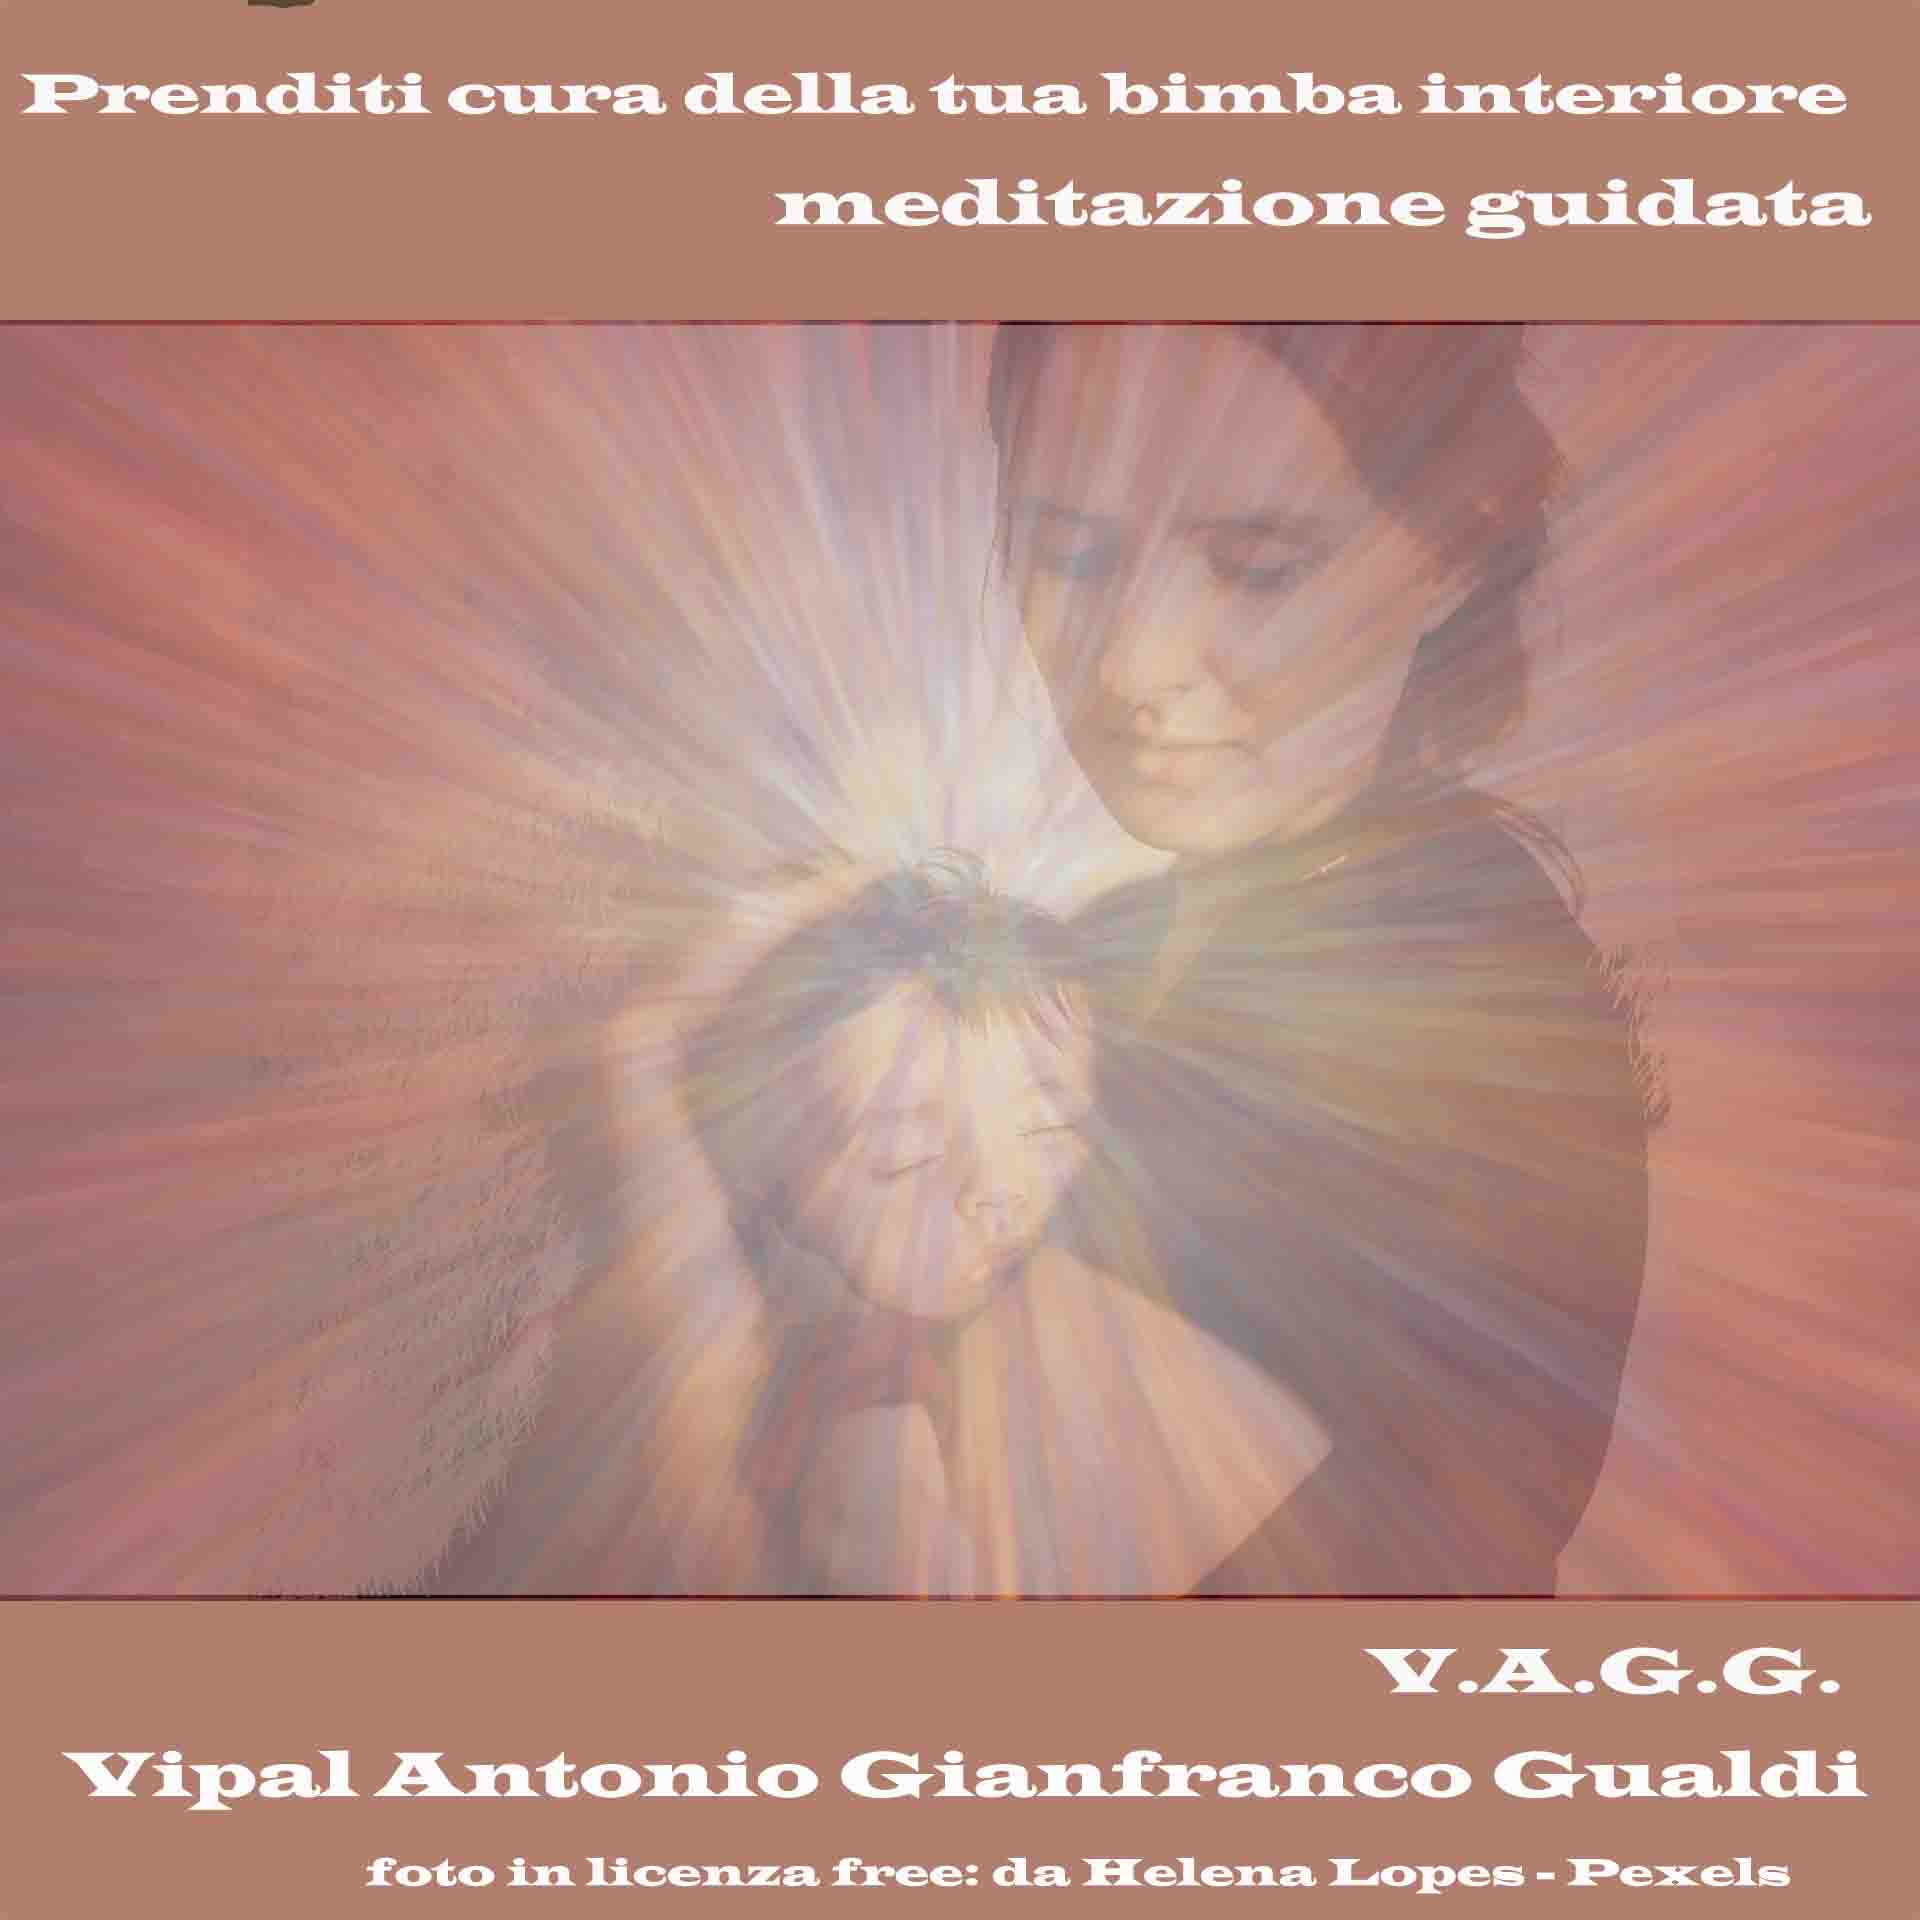 Prenditi cura della tua bimba interiore meditazione guidata Vipal Antonio Gianfranco Gualdi